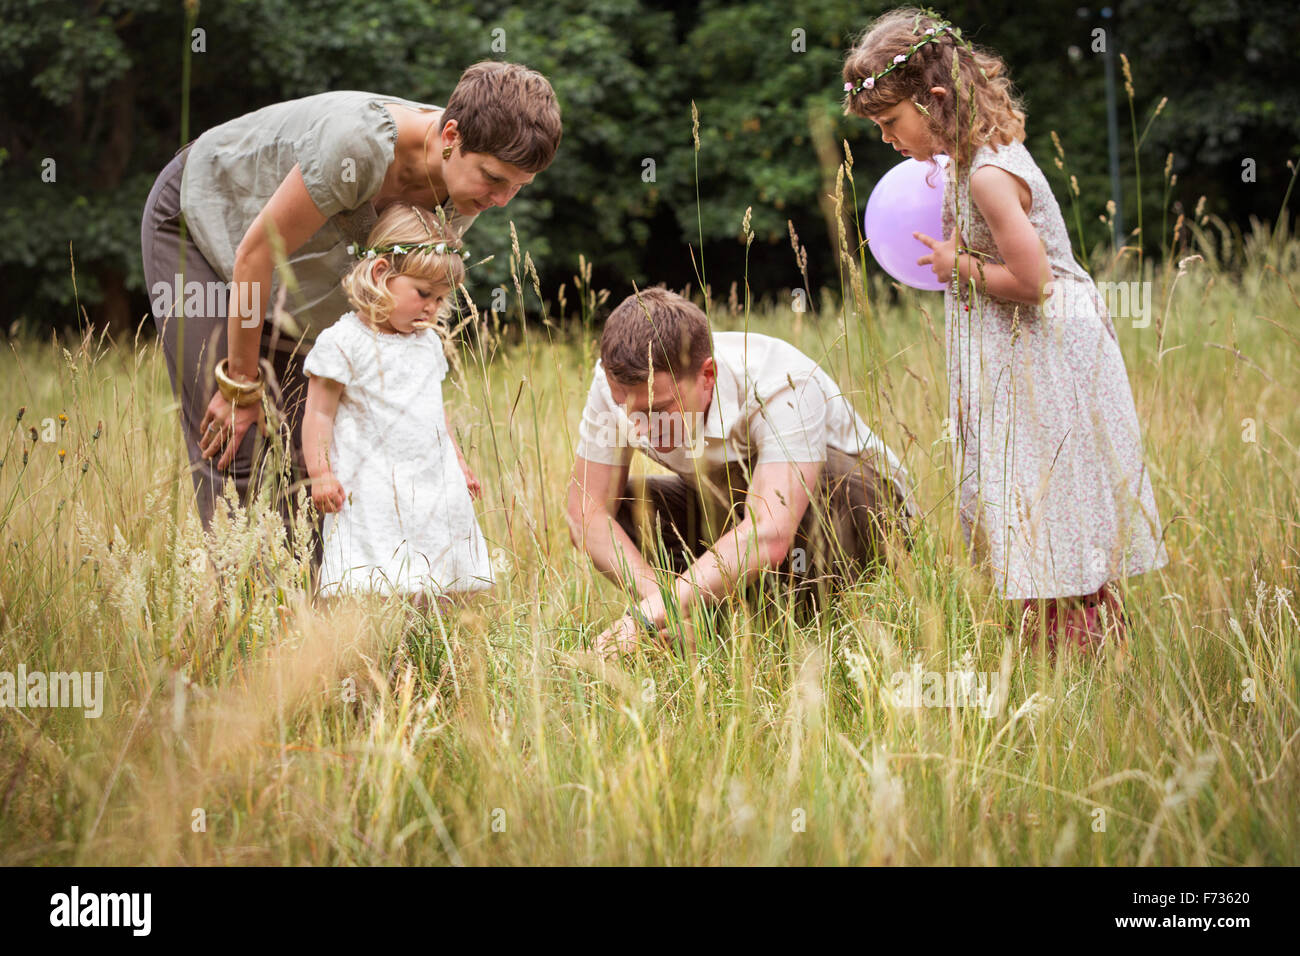 Familia con dos niños jugando en un prado. Foto de stock